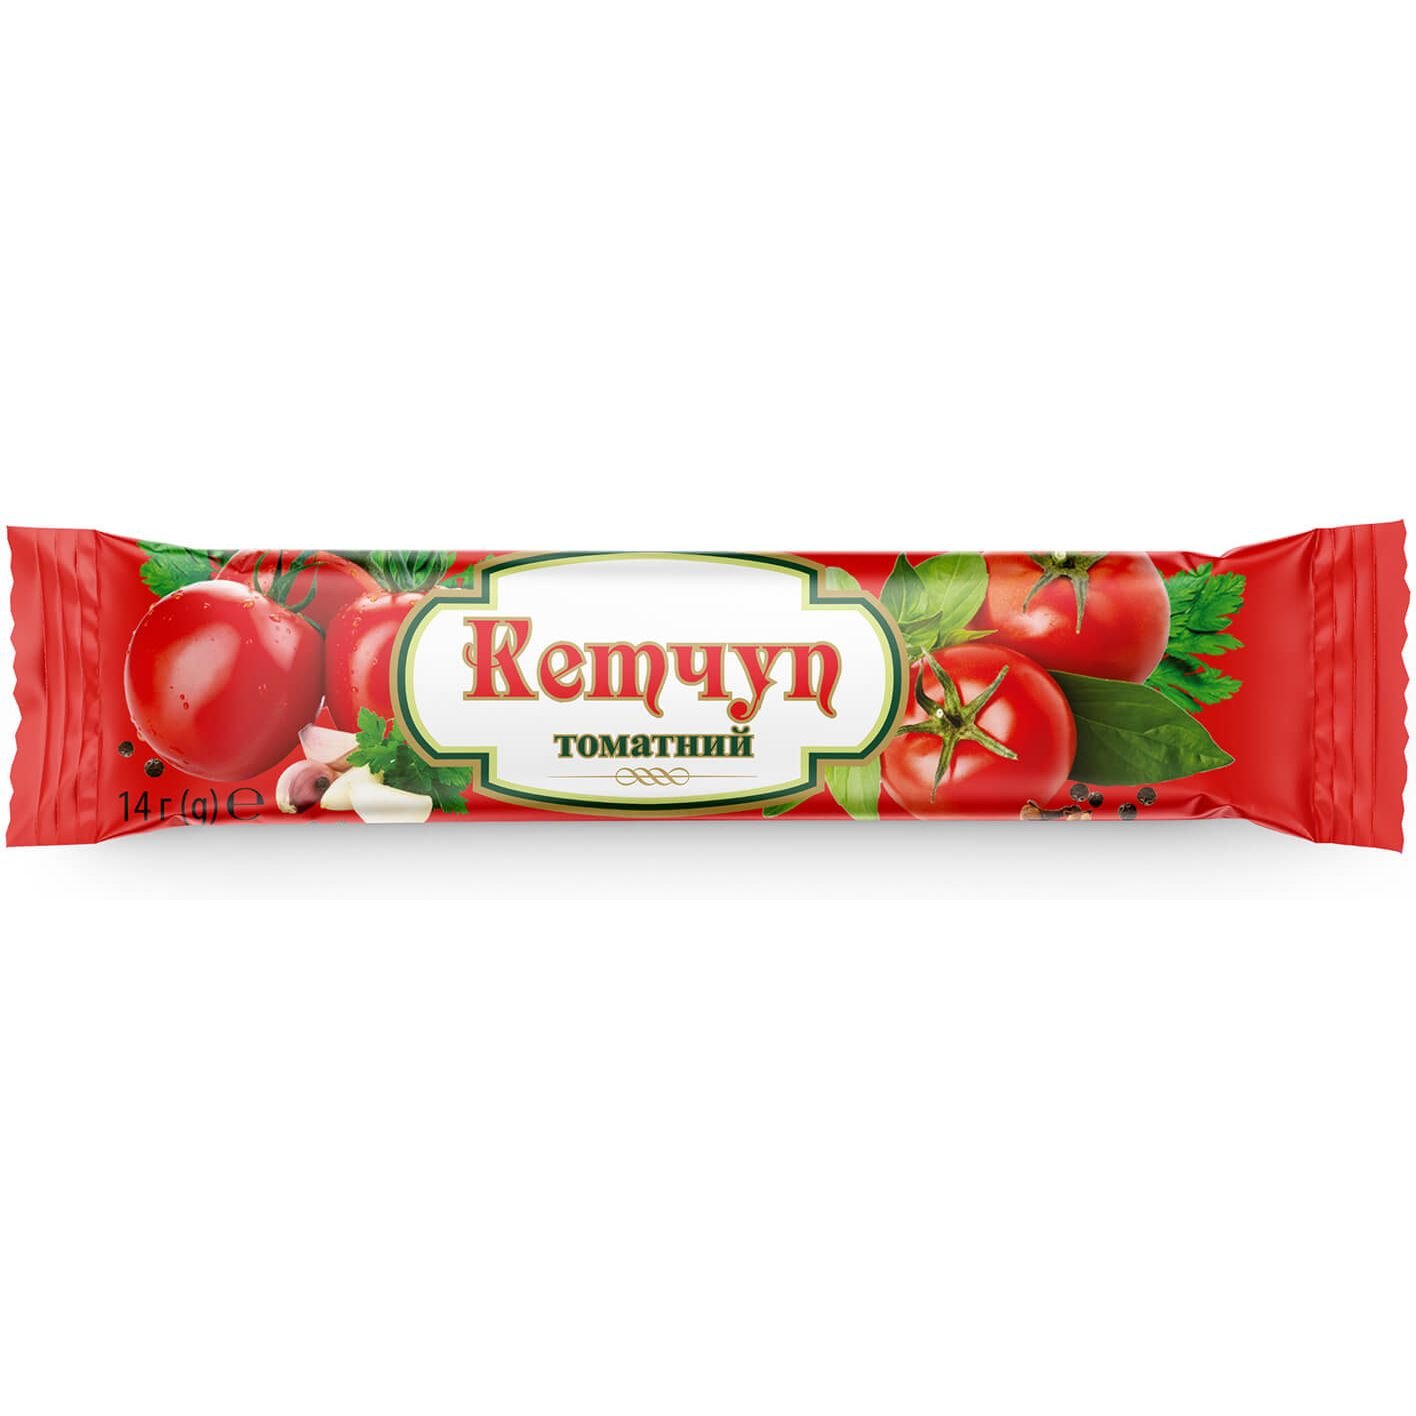 Кетчуп Асканія-Пак томатний в стіку, 14 г (517005) - фото 1